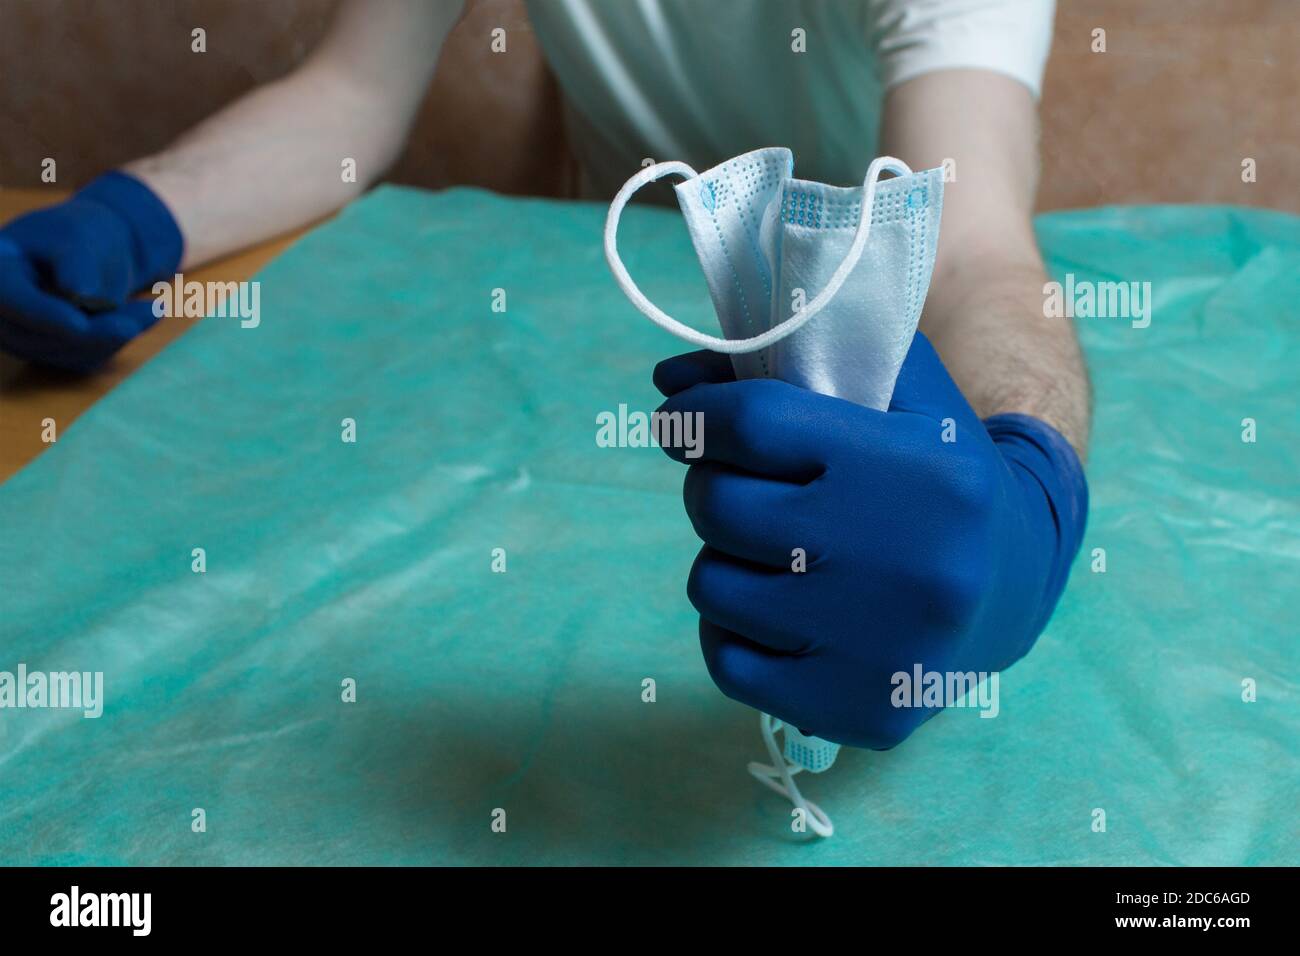 Eine mit blauen Handschuhen geschützte geschlossene Faust quetscht eine OP-Maske. Gesundheitsfürsorge und chirurgisches Konzept. Persönliche Schutzausrüstung im Gesundheitswesen. Stockfoto